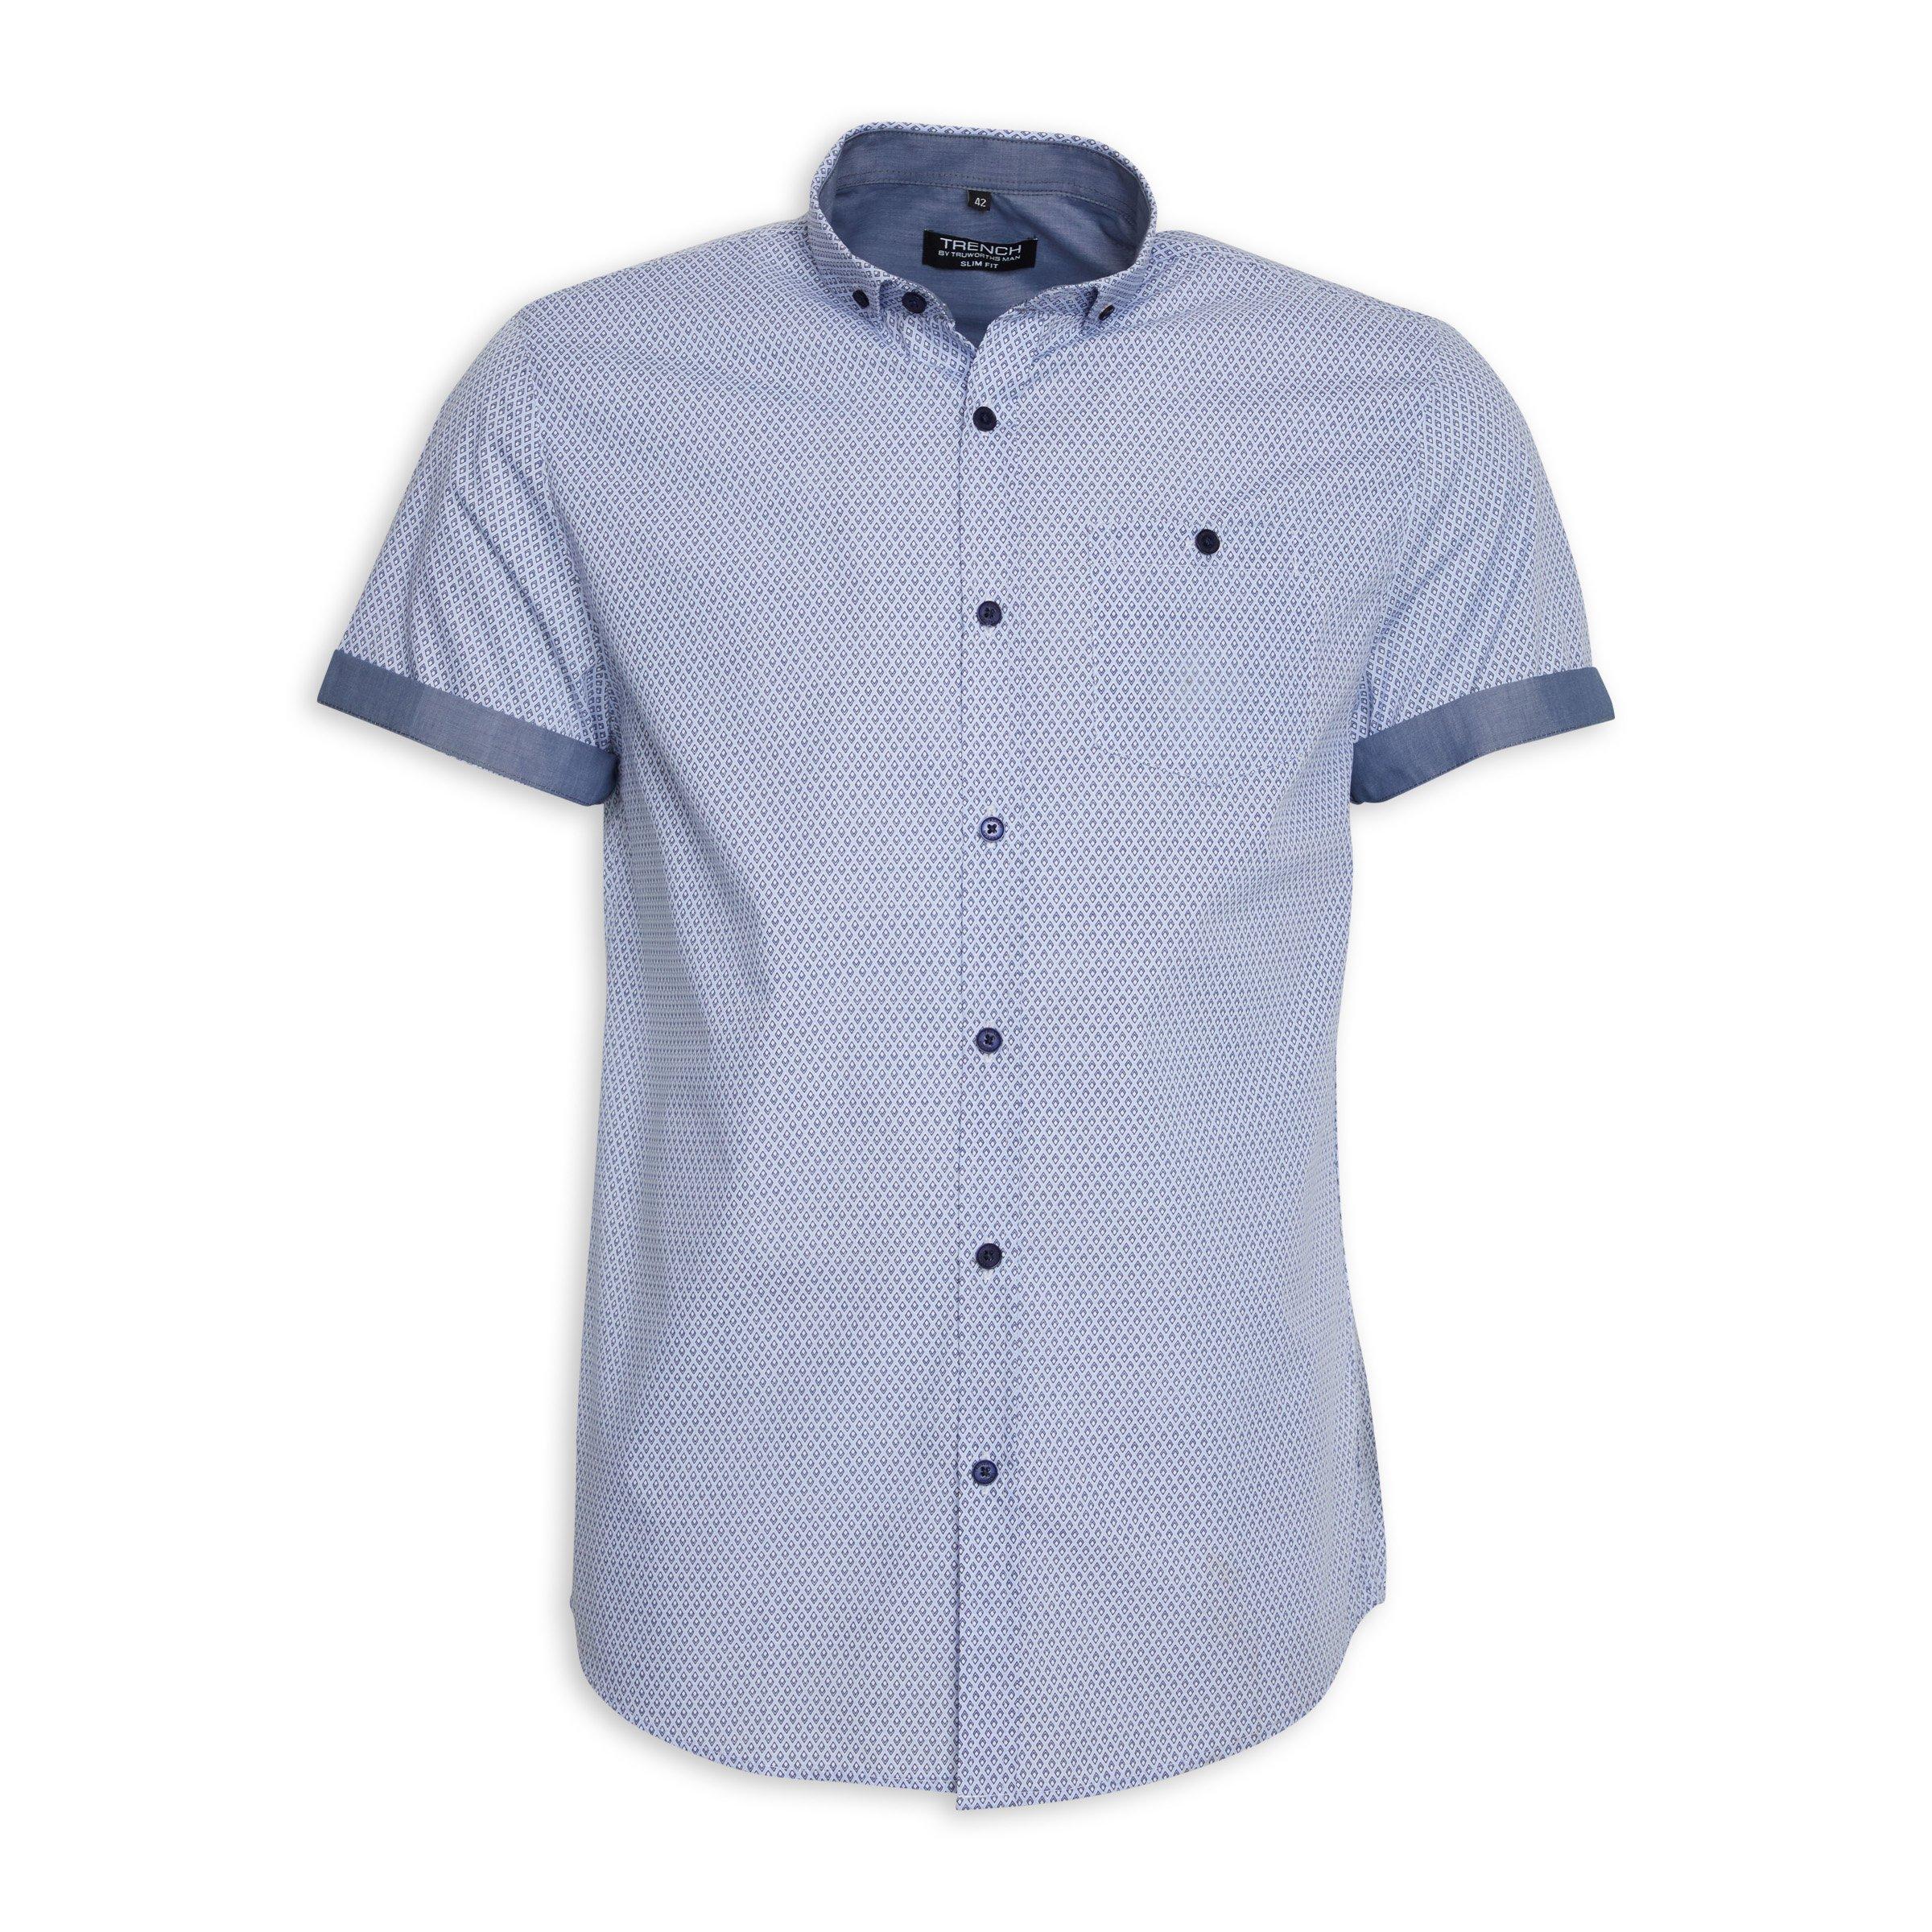 Buy Truworths Man Blue Geometric Shirt Online | Truworths